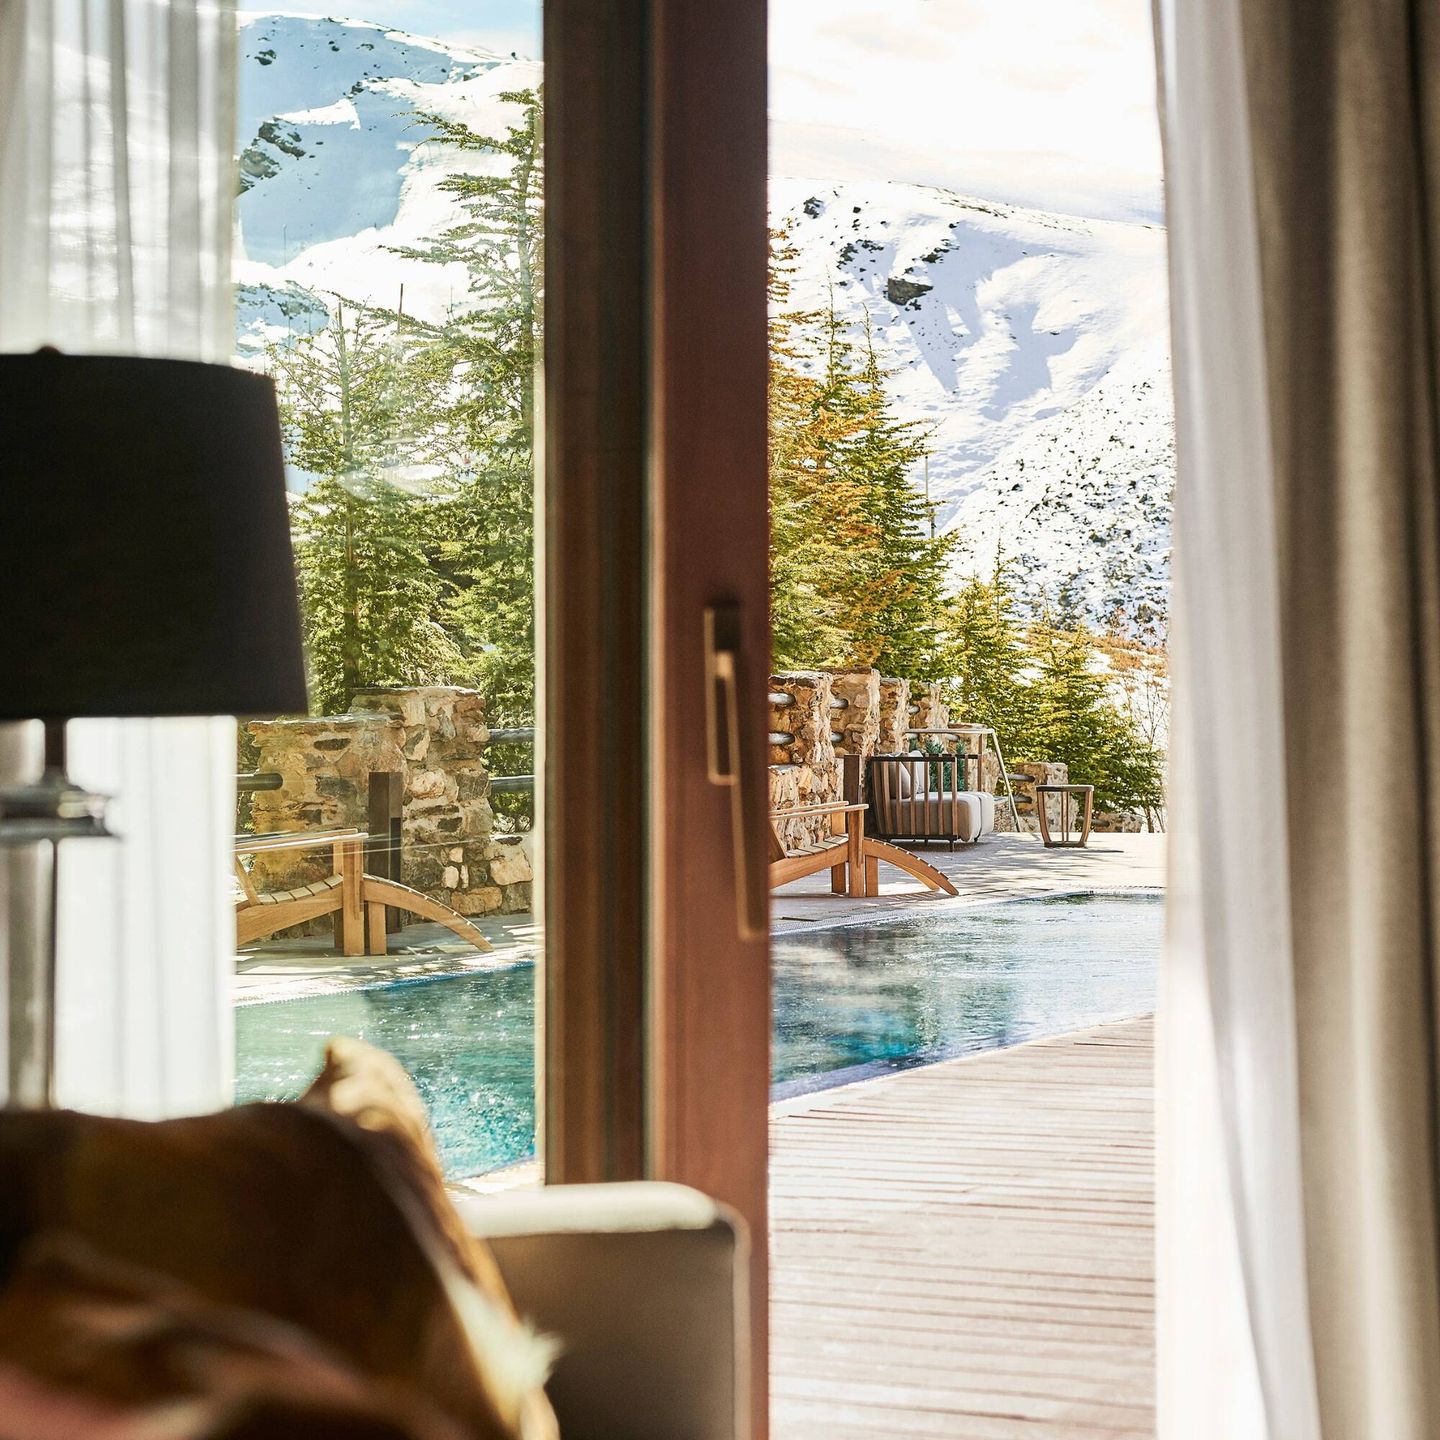 Este hotel de cinco estrellas cuenta con la única piscina climatizada al aire libre de Maribel, accesible directamente desde algunas habitaciones y suites. (Cortesía)